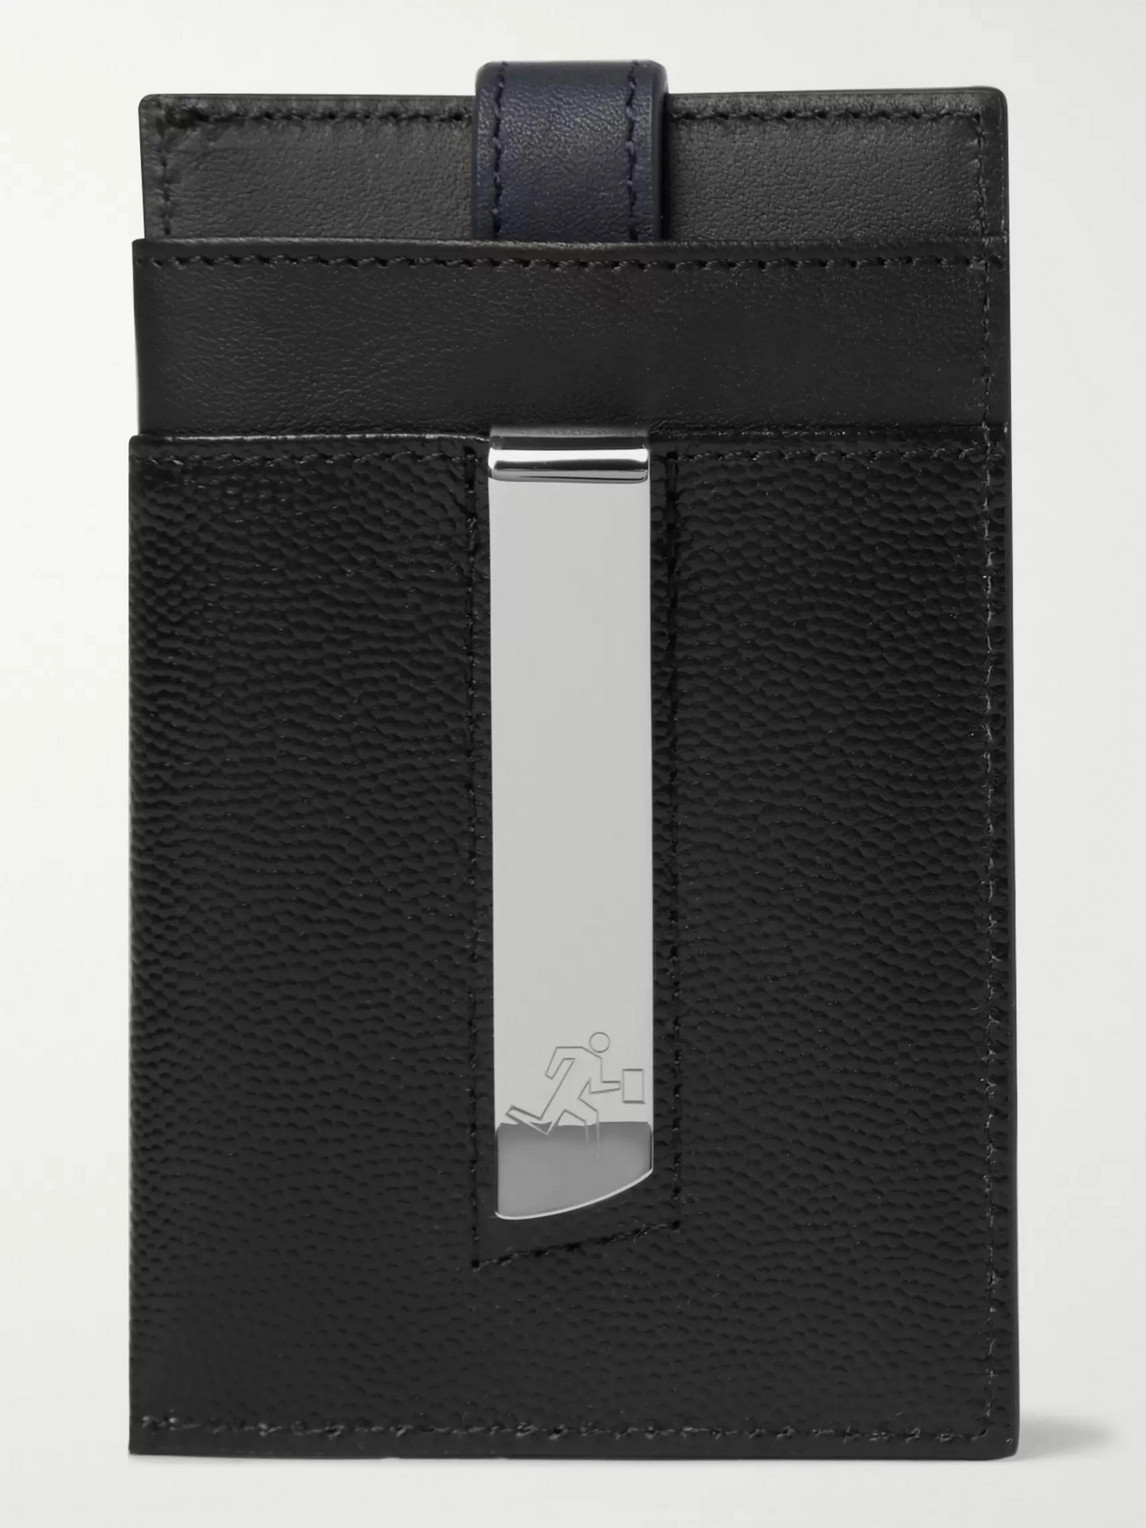 Want Les Essentiels De La Vie Pebble-grain Leather Cardholder With Money Clip In Black